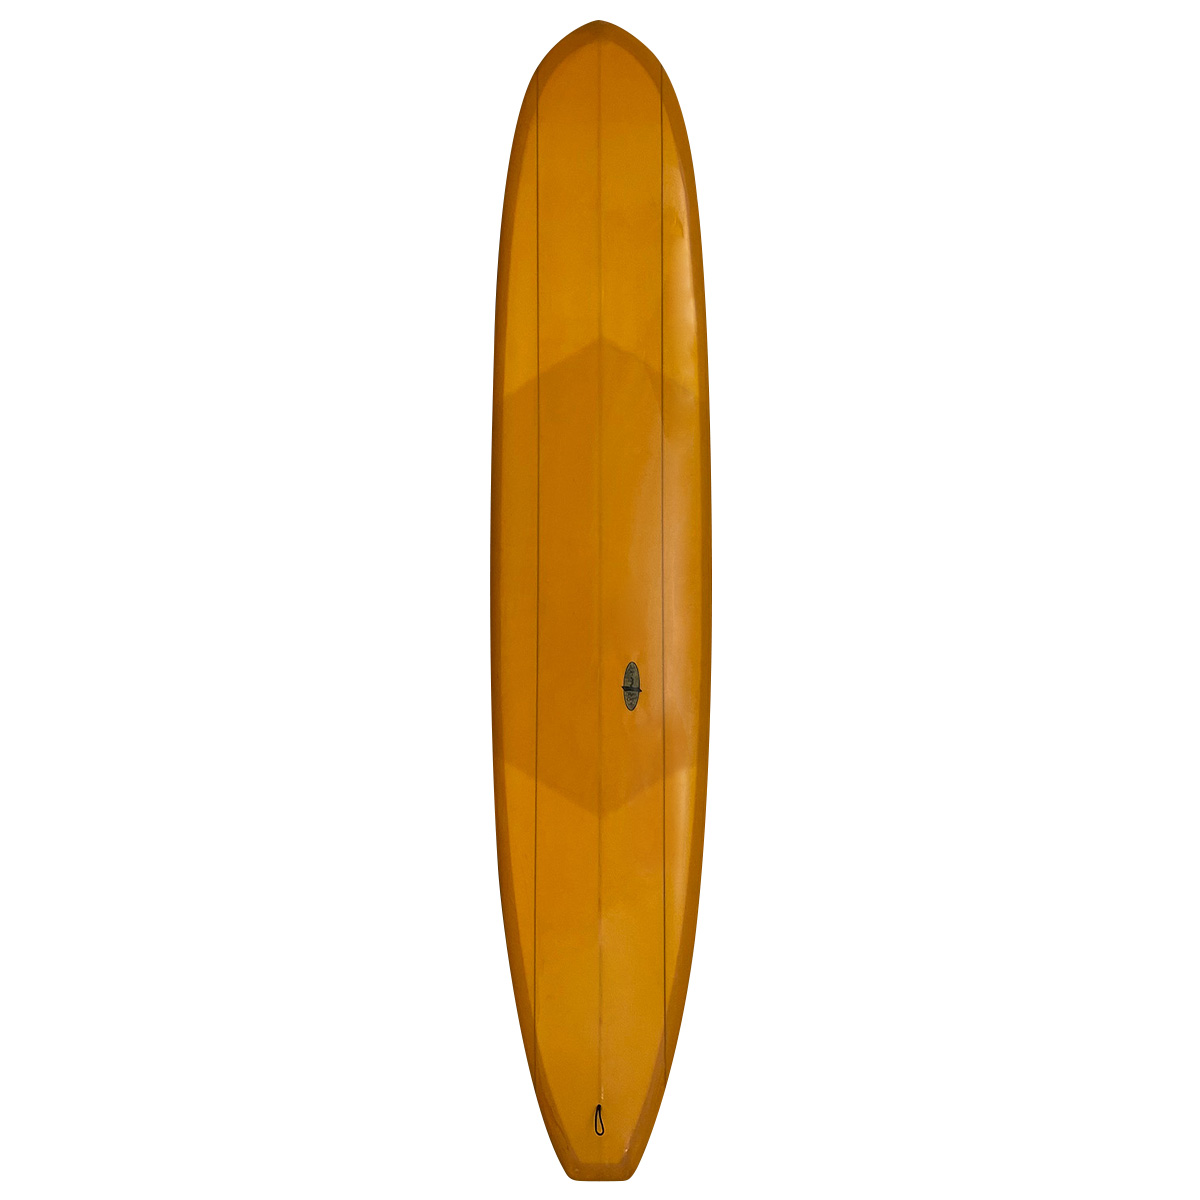 KI SURFBOARDS / KI SURFBOARDS / FLYING CARPET 9`4